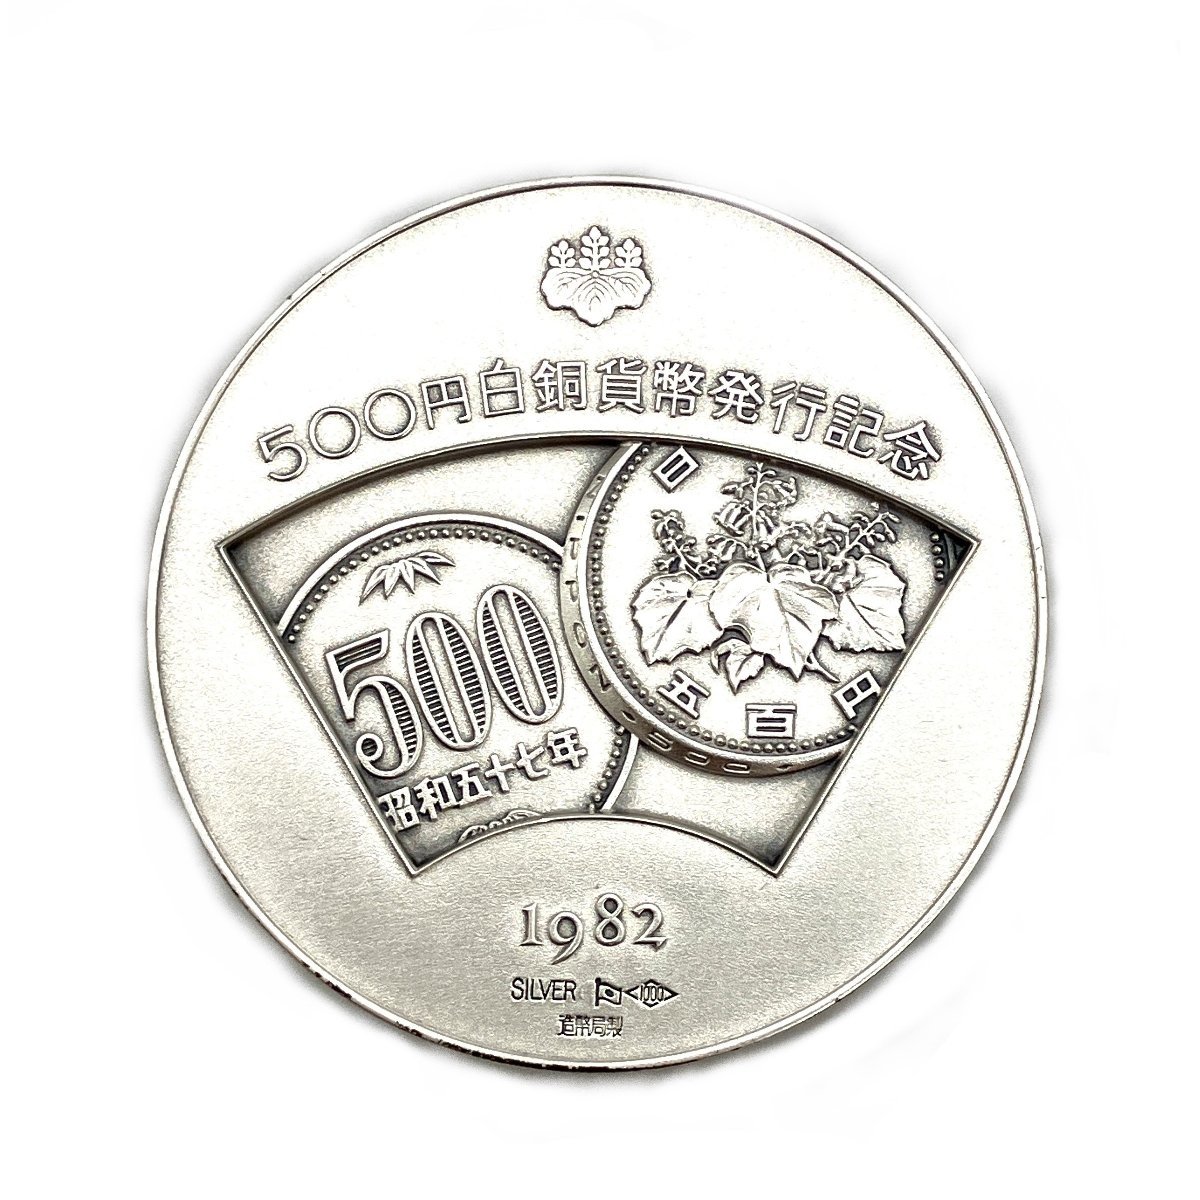 500円白銅貨幣発行記念 記念メダル 銀貨 シルバー製品 純銀 SV1000